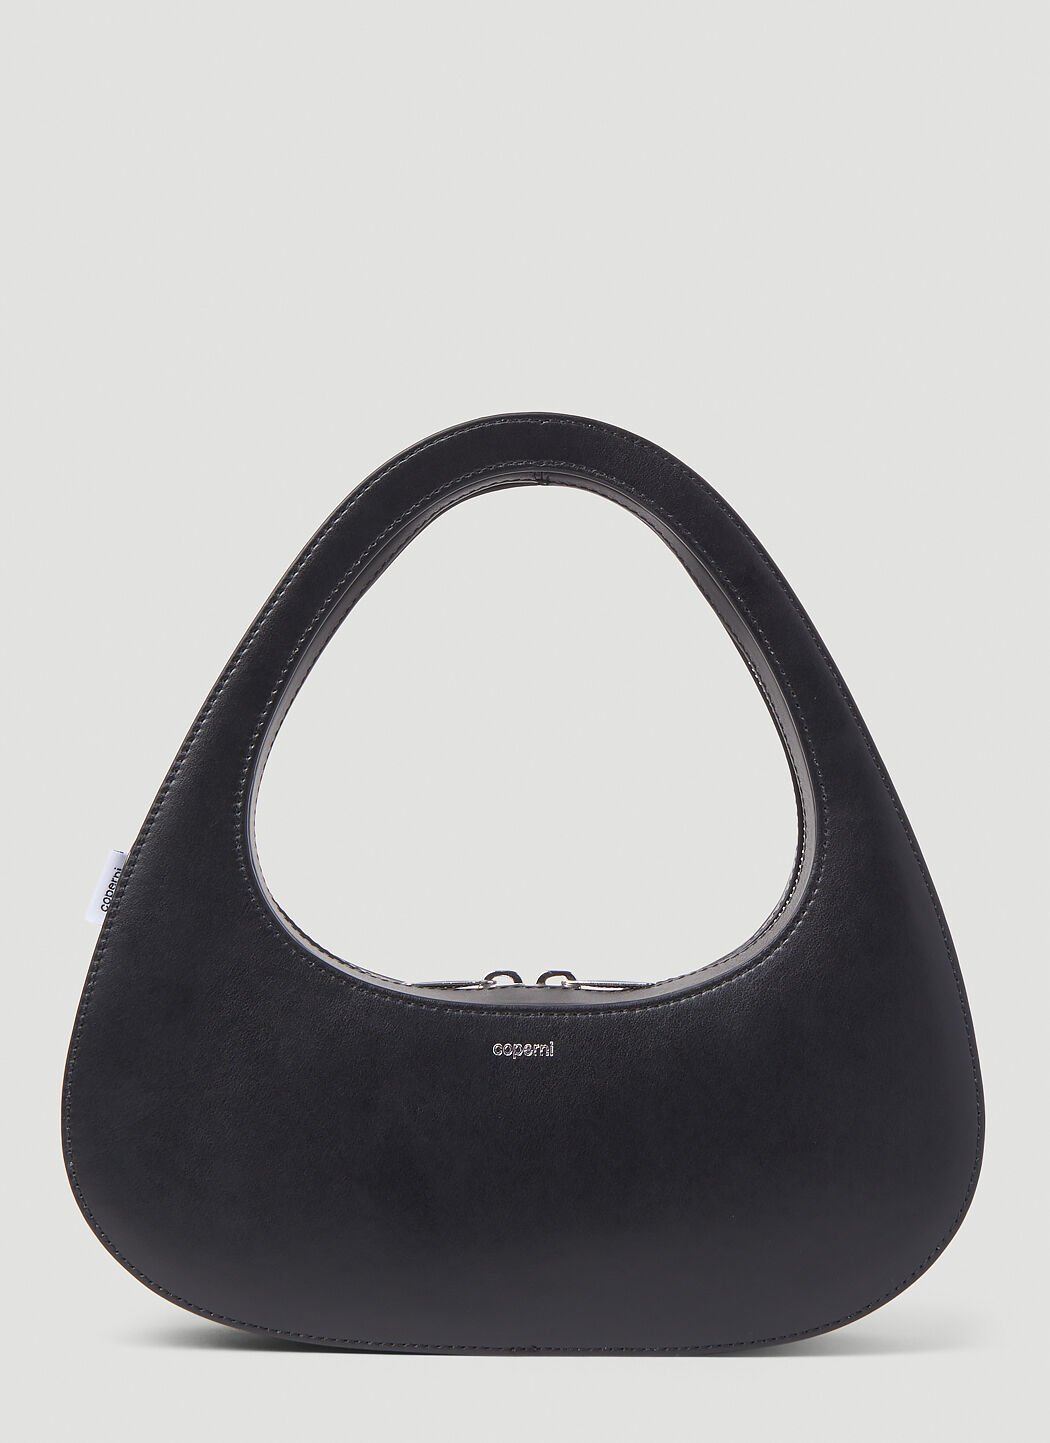 Balenciaga Baguette Swipe Handbag Black bal0253036